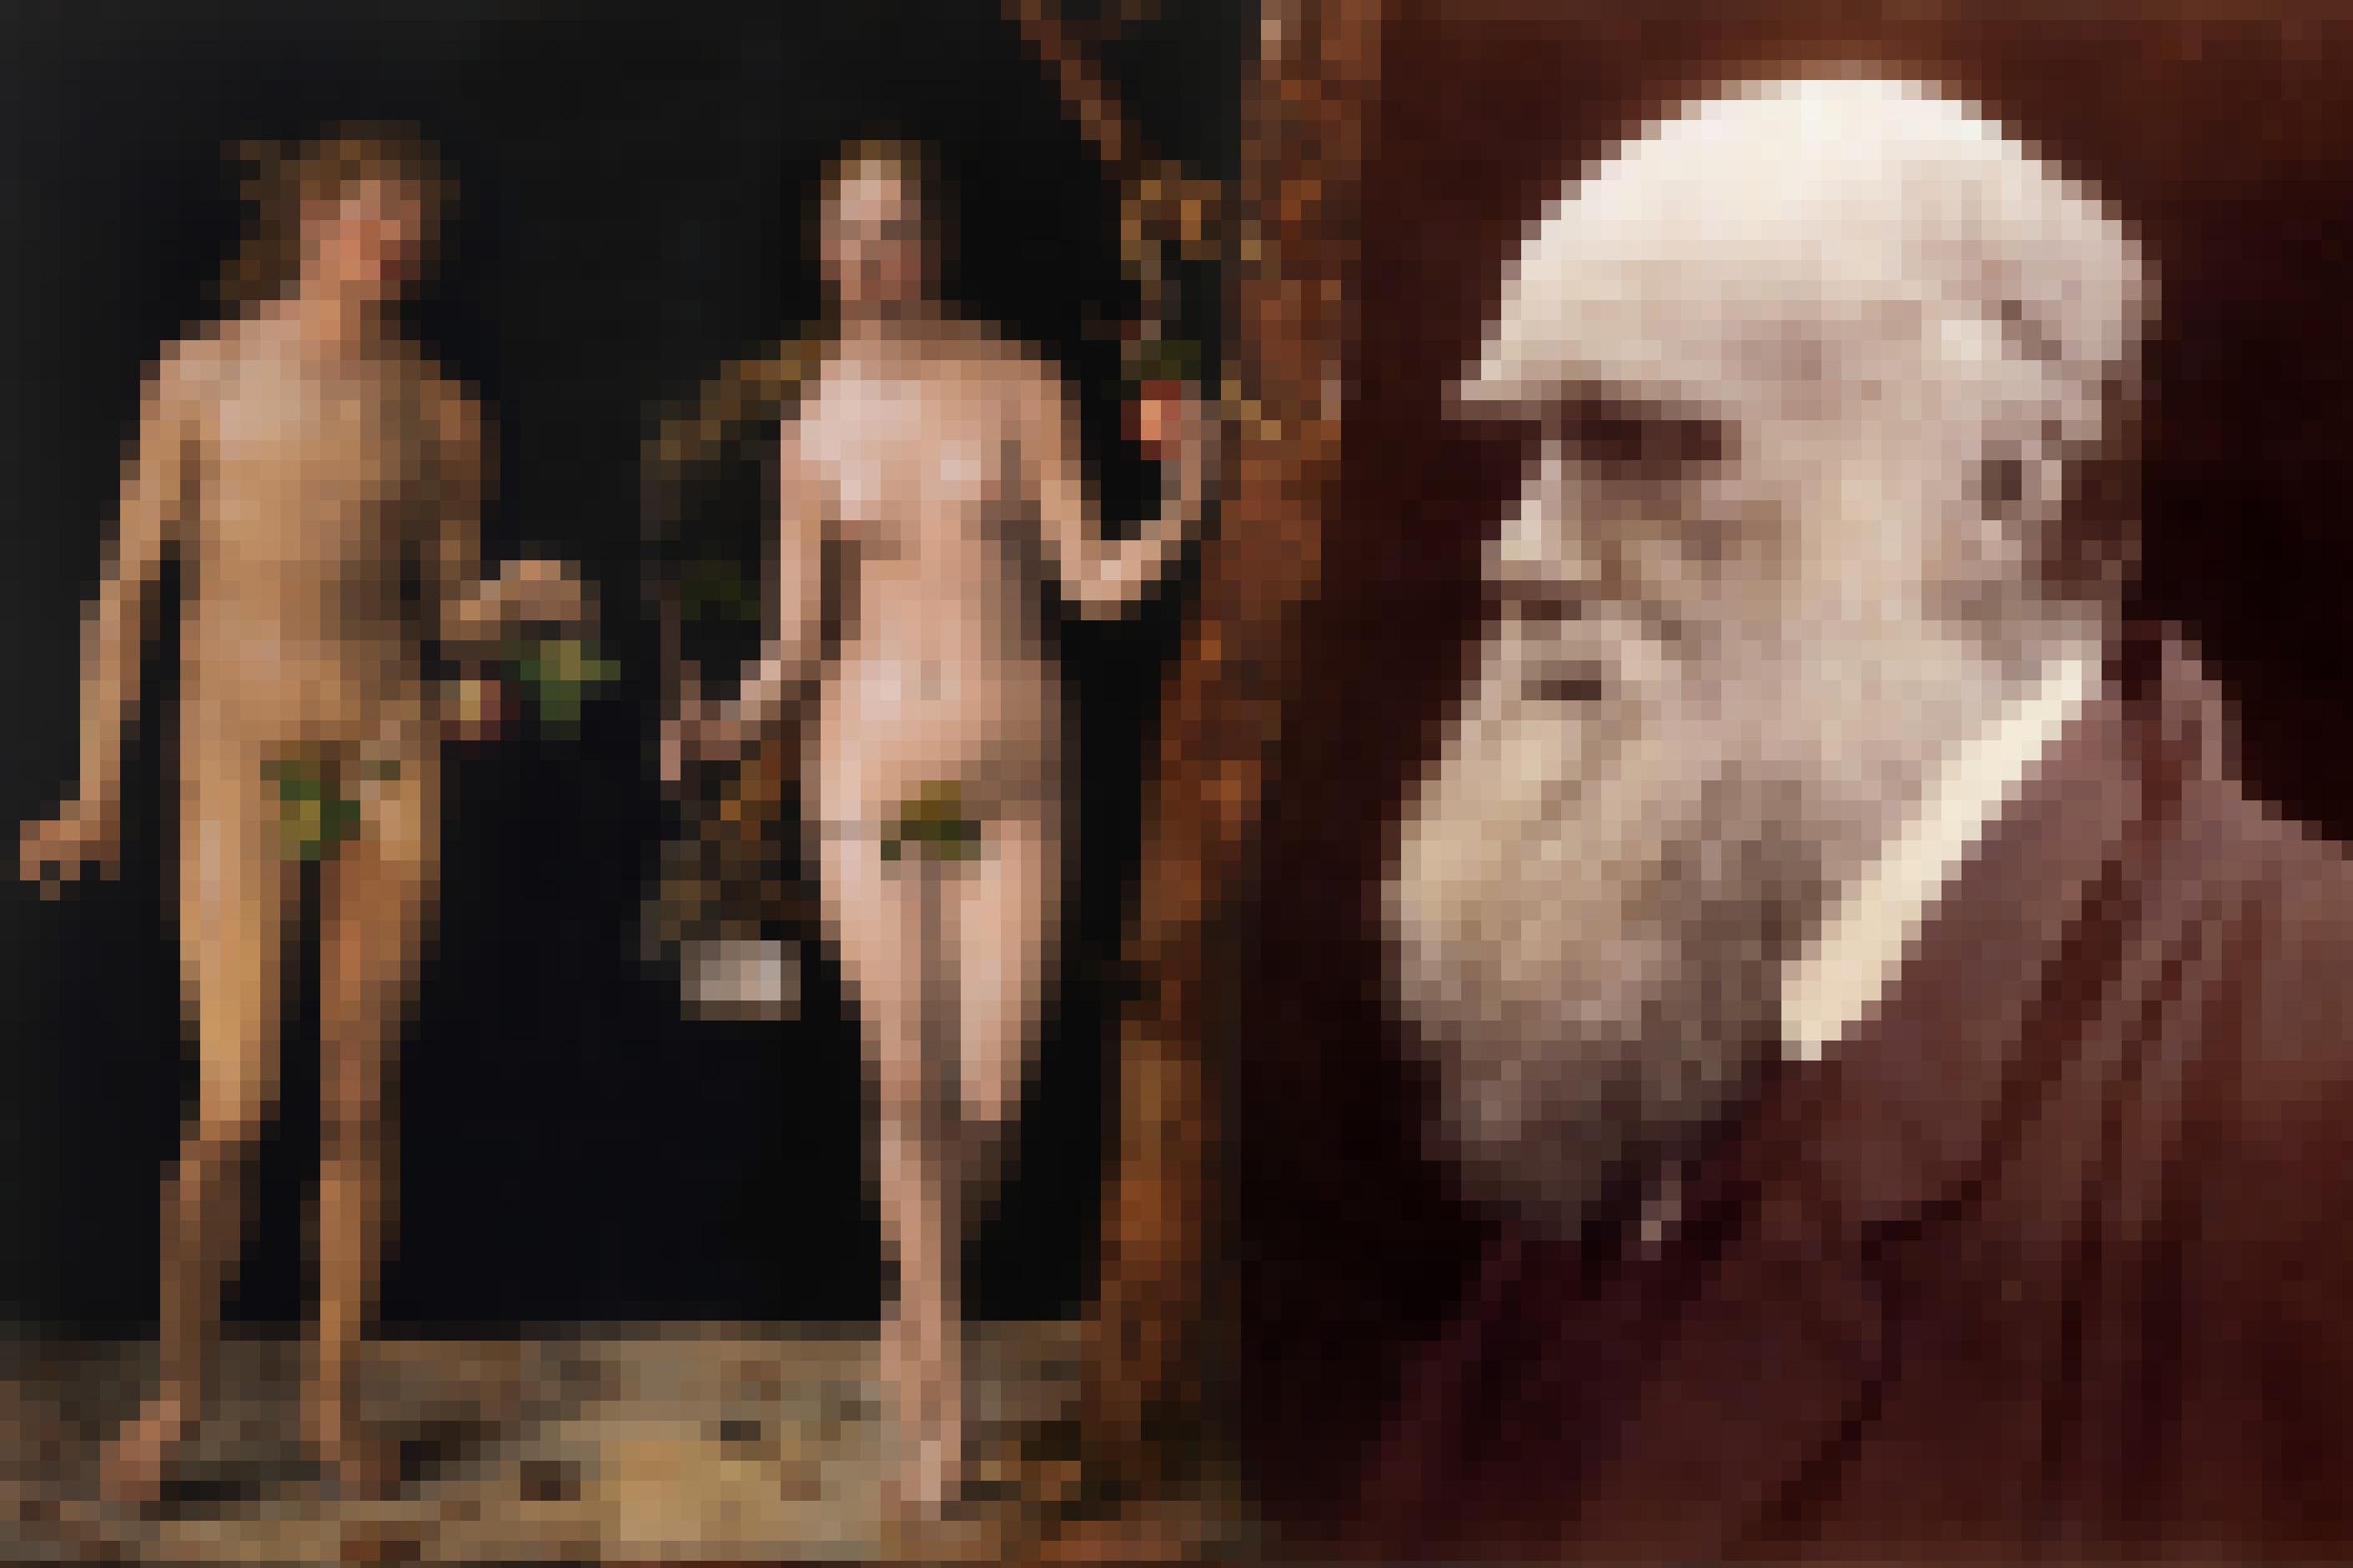 Das Bild zeigt links Darstellungen von Adam und Eva, die Albrecht Dürer im Jahr 1507 malte. Die Figuren sind hellhäutig, nackt und die Geschlechtsteile sind von Zweigen bedeckt. Eva hält einen Apfel in der Hand und im Baum neben ihr lauert eine Schlange. Laut Bibel schuf Gott die beiden ersten Menschen. Charles Darwin, dessen Foto als älterer Mann mit Glatze und üppigem, weißen Bart auf der rechten Seite dieser Collage zu sehen ist, war sich dagegen sicher, dass die Evolution den Menschen in einem langwierigen Prozess hervorgebracht hat.